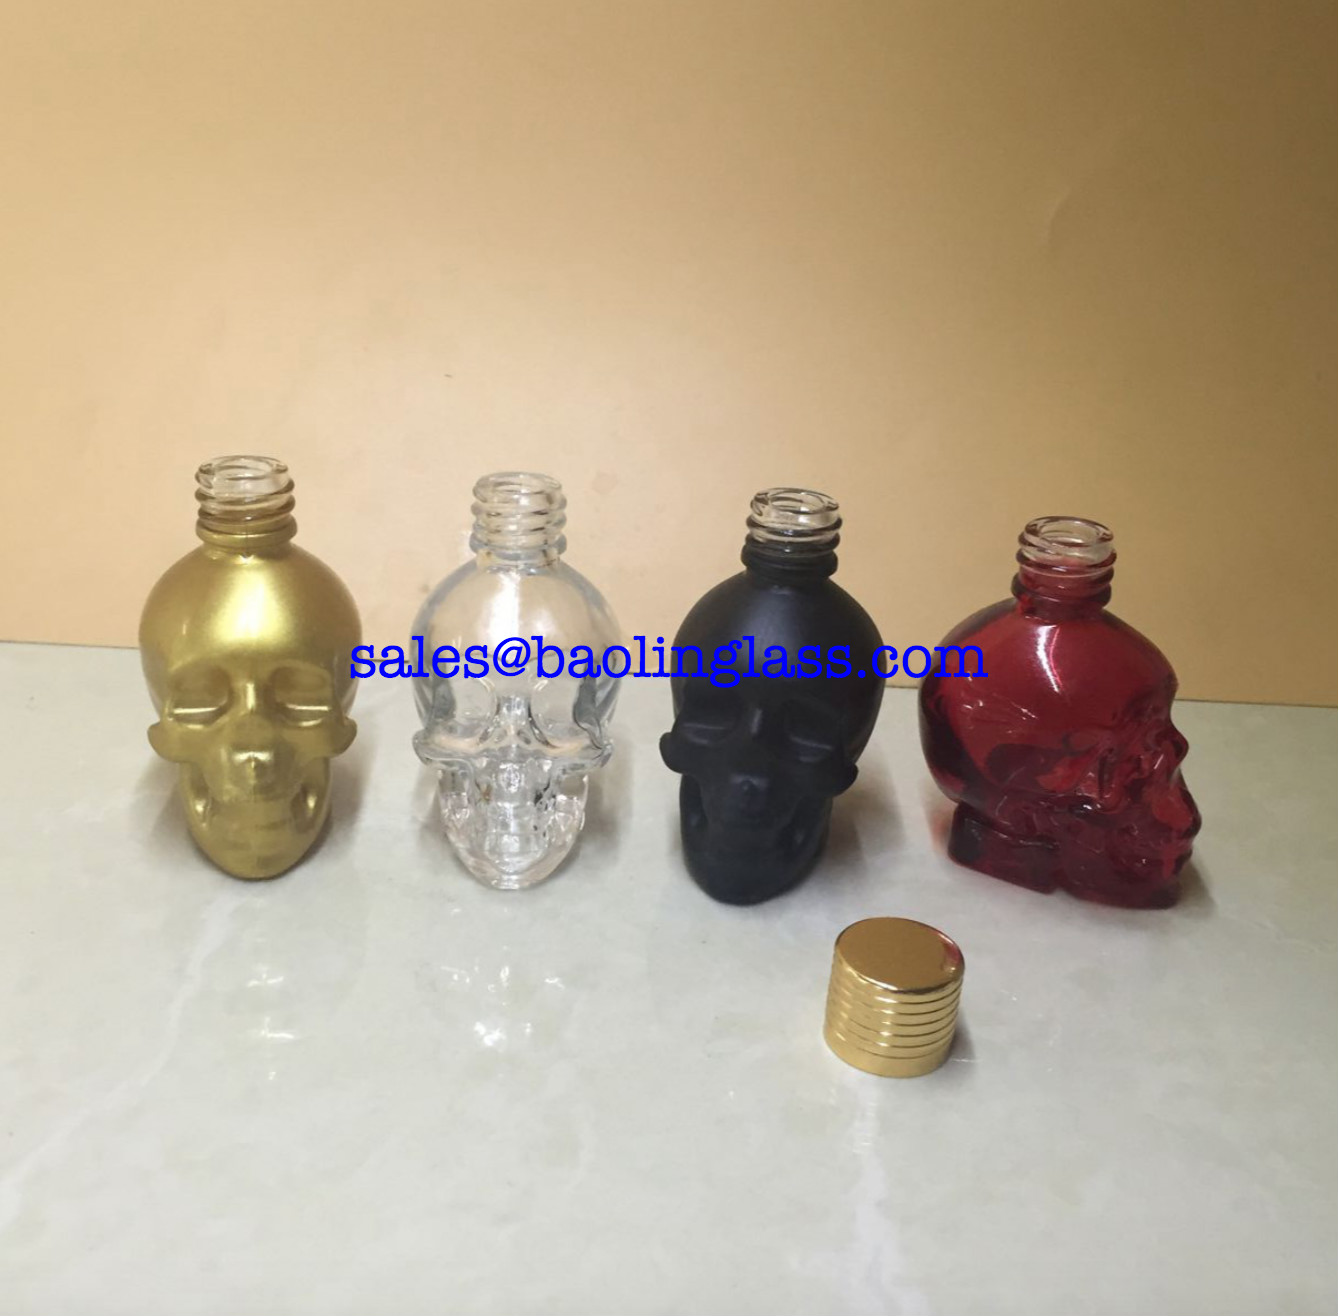 1oz 30ml skull shape glass dropper oil bottle